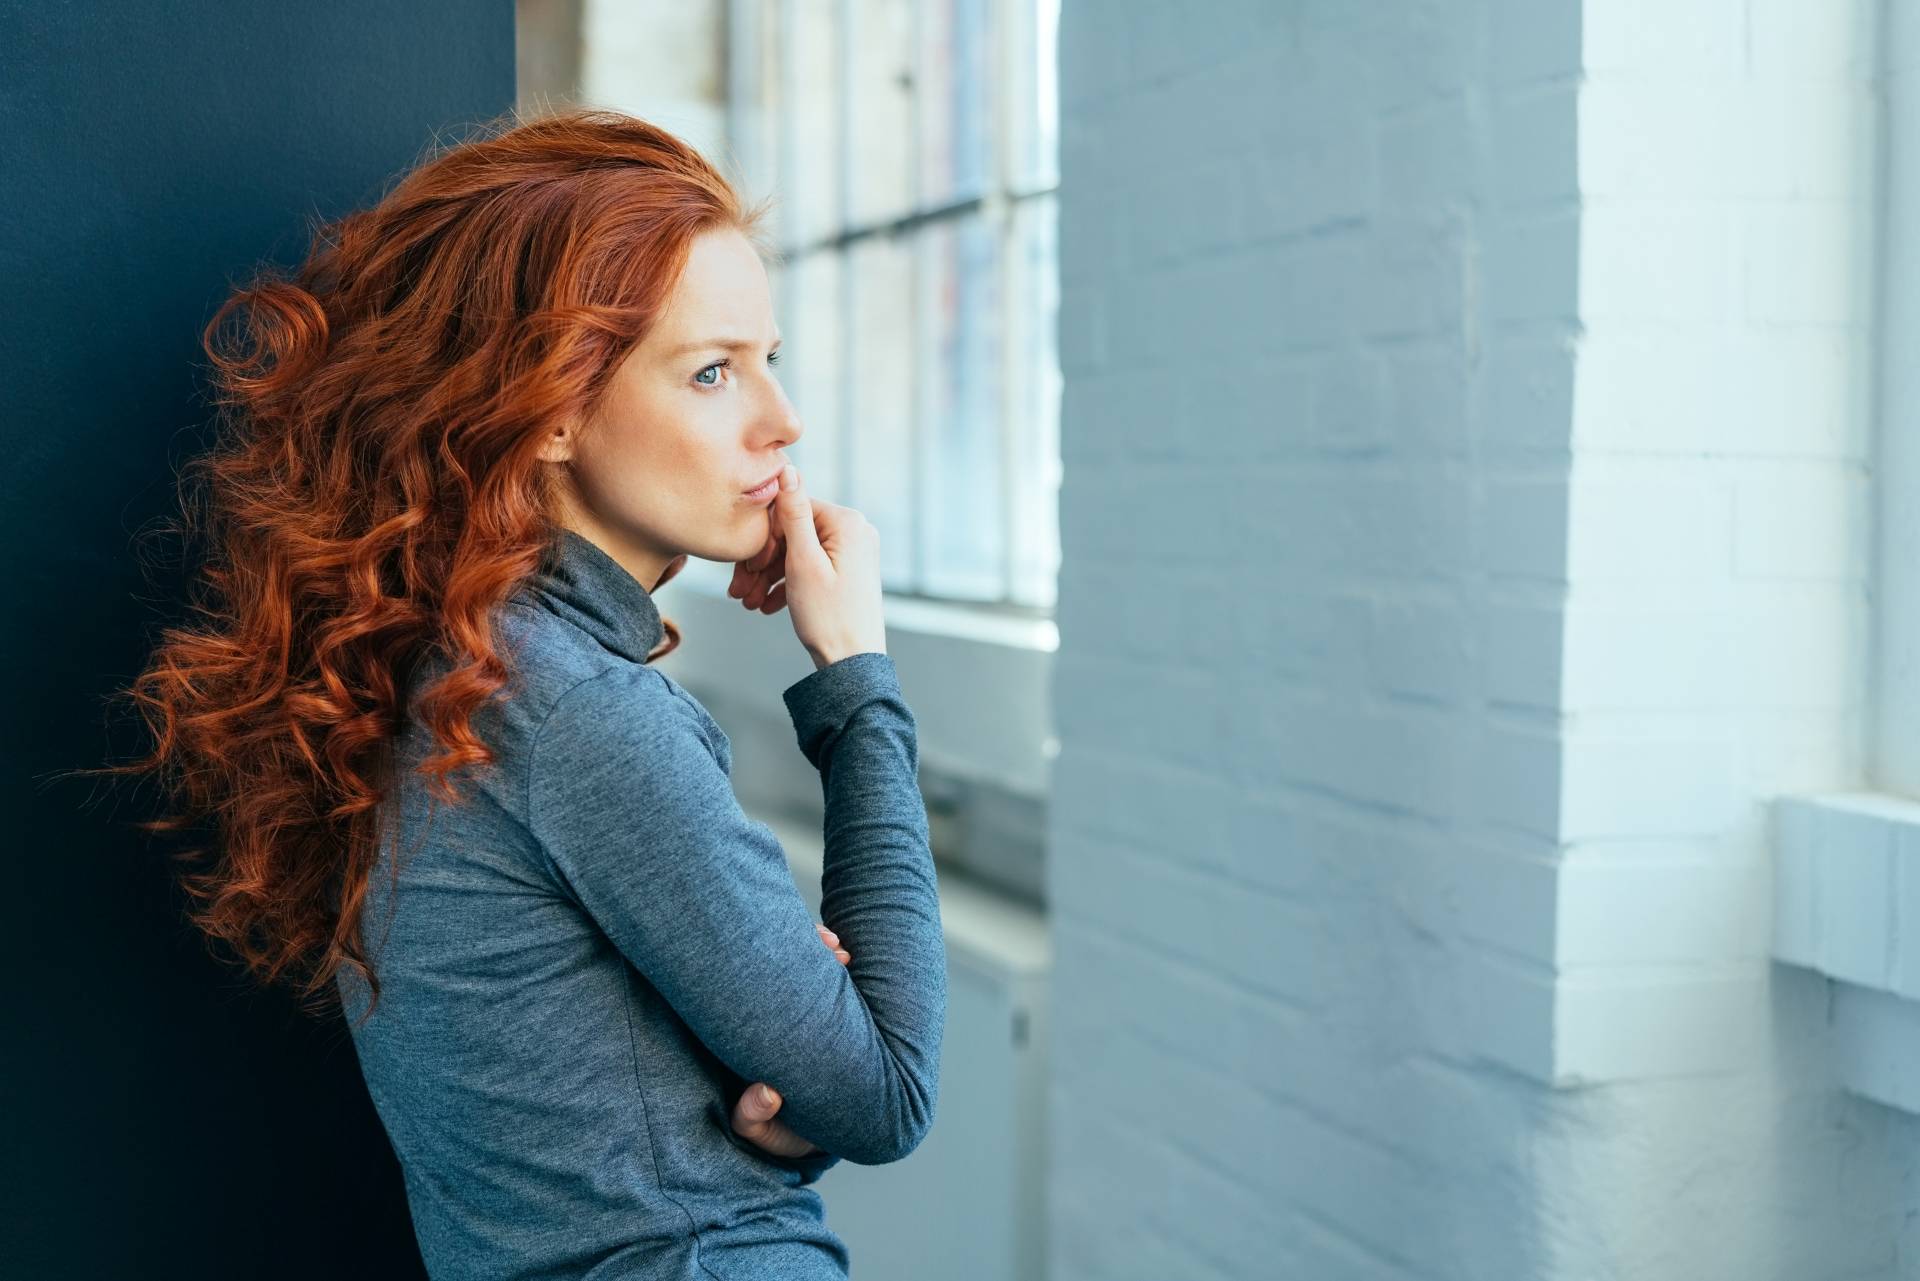 Jakie homeopatyczne leki na PMS mogą ci pomóc? Smutna kobieta w gęstych kręconych rudych włosach, w szarym golfie, zastanawia się nad czymś, patrząc w okno.